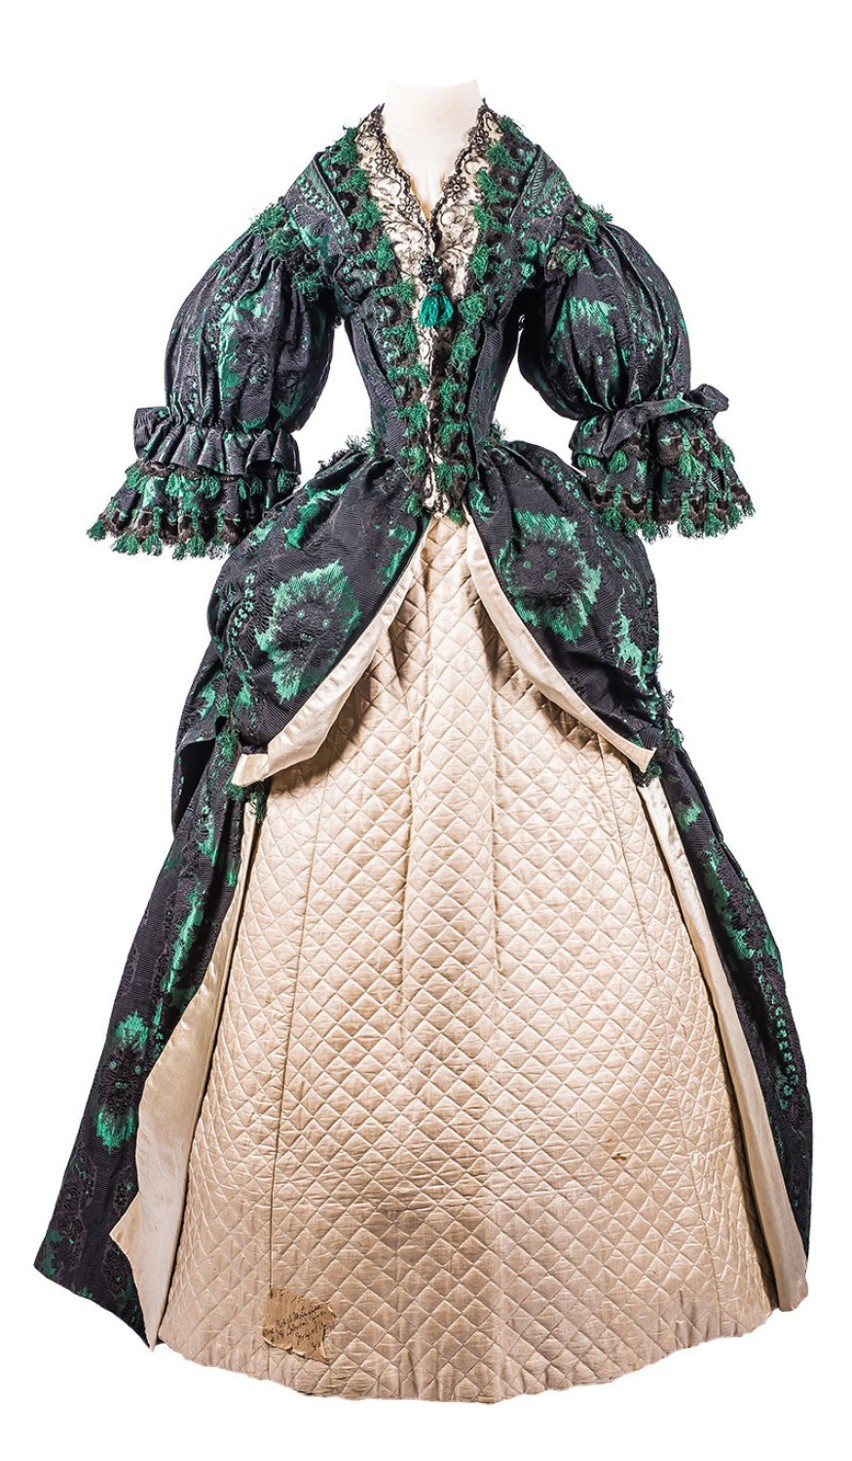 Suknia wystawiona na aukcję w Trójmieście pochodzi z lat 60....